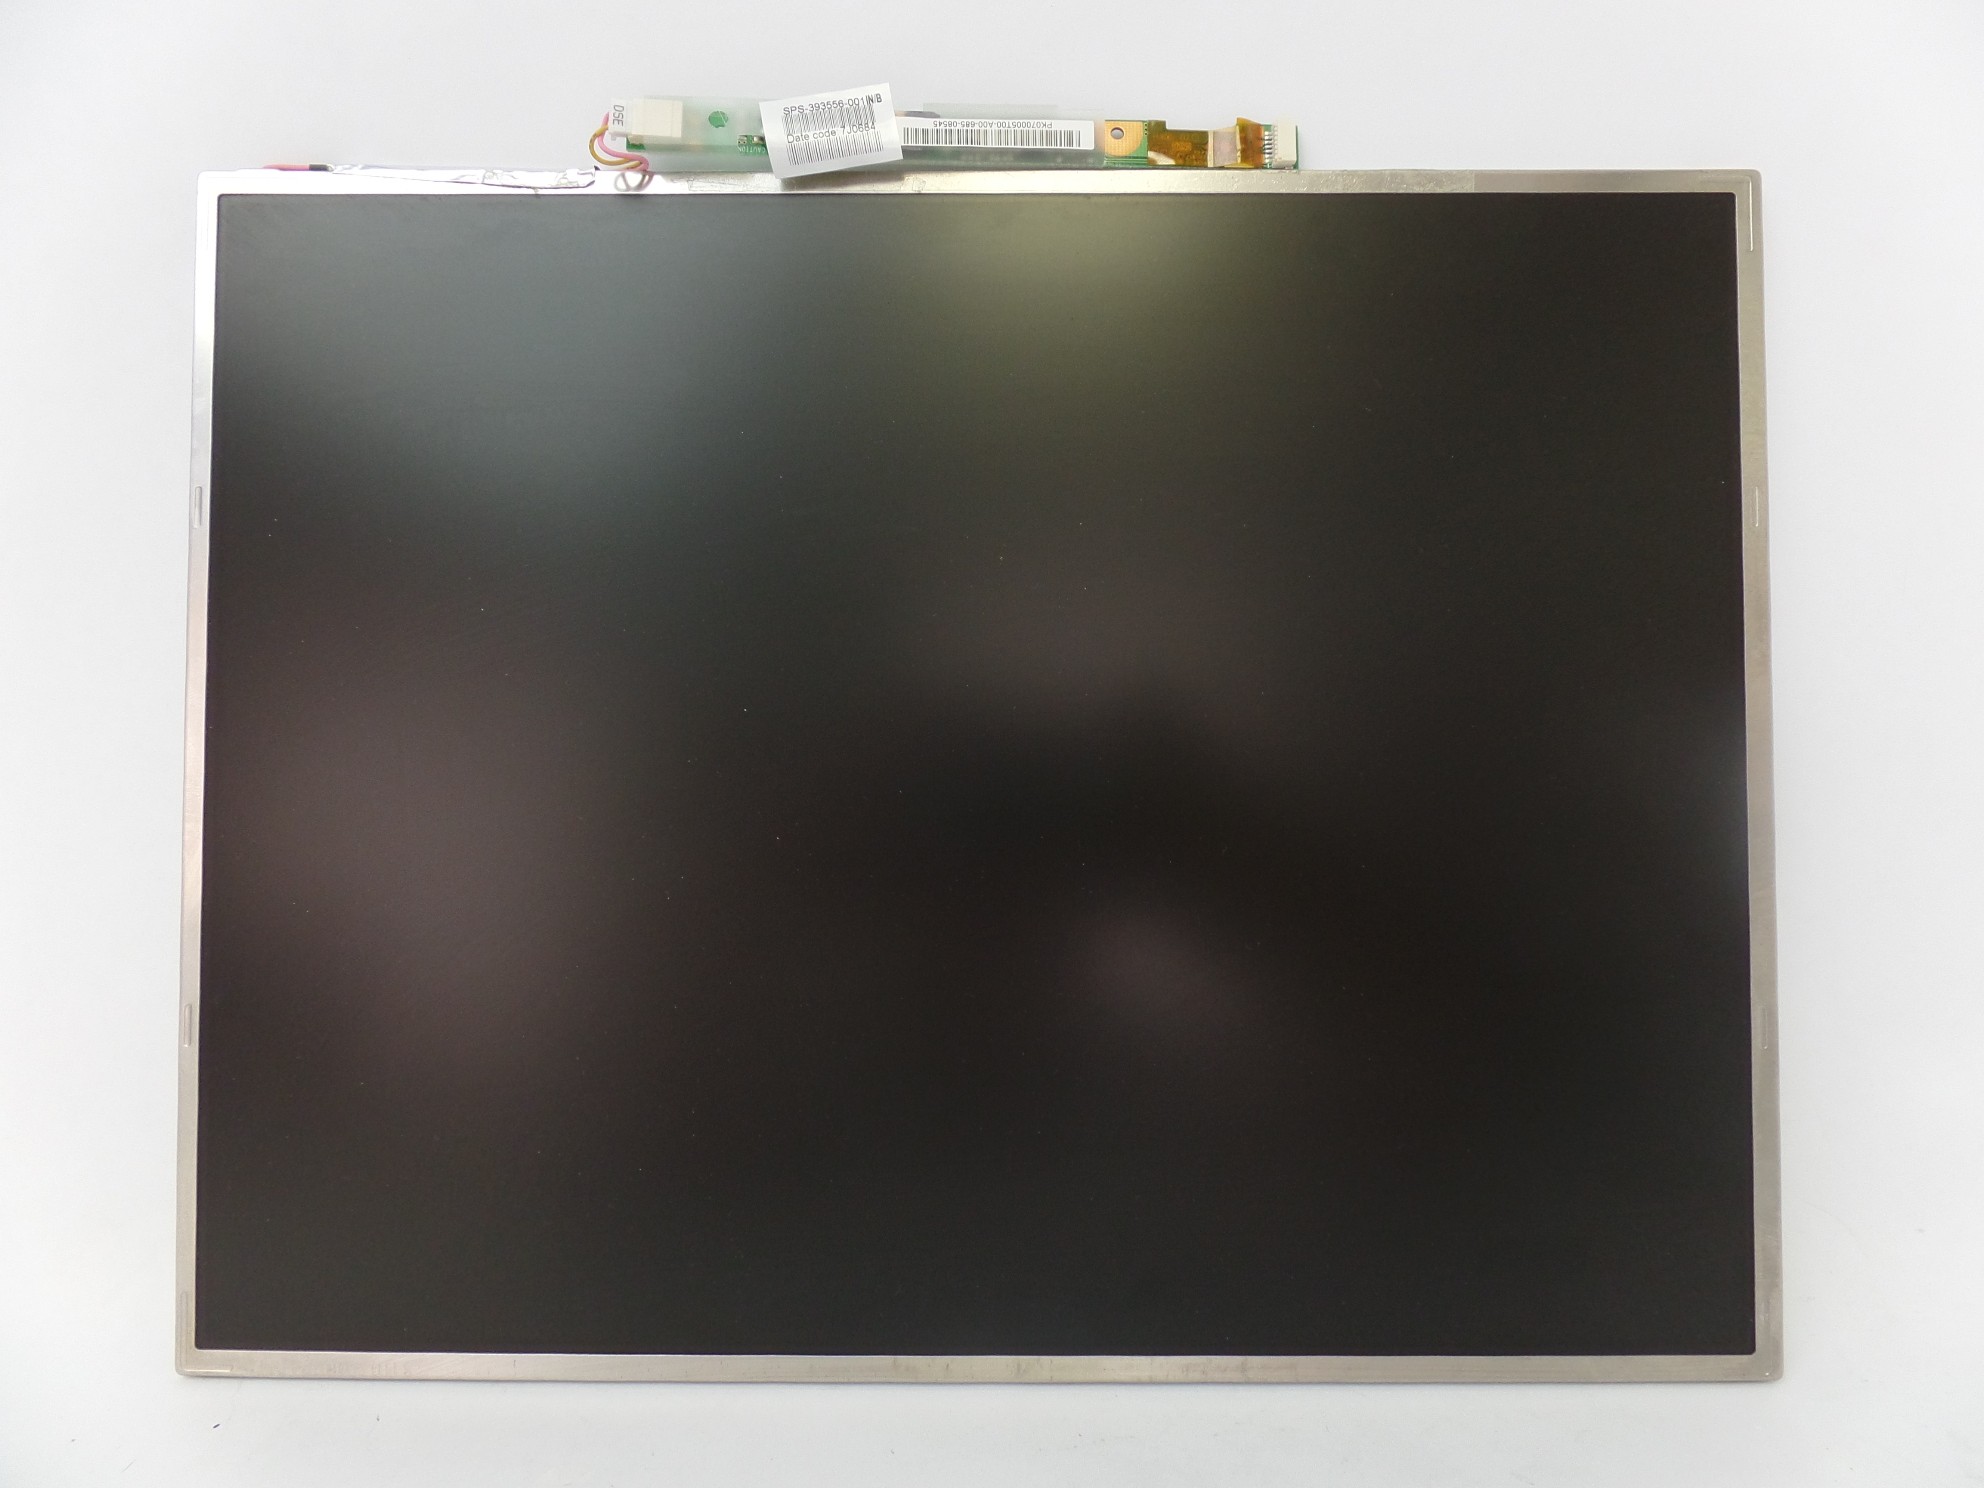 OEM 15" LCD Screen Matte HP Compaq NX6125 LP150E06-A3 K2 6870S-0122H 